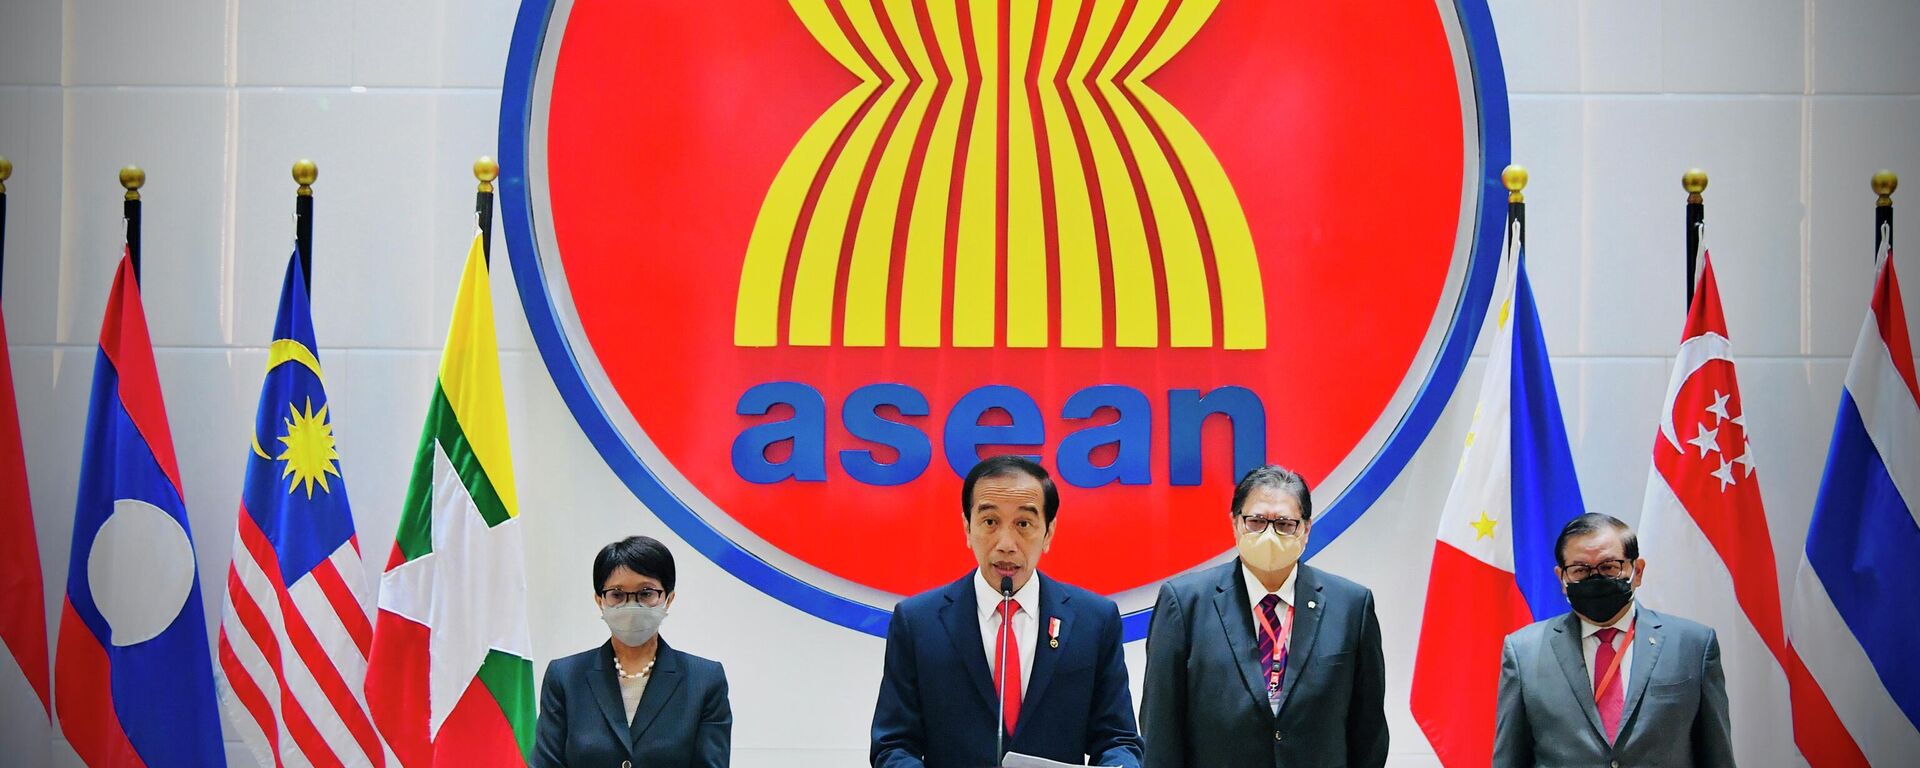 Tổng thống Indonesia Joko Widodo đưa ra một tuyên bố báo chí tại Hội nghị Cấp cao ASEAN tại Jakarta. - Sputnik Việt Nam, 1920, 08.08.2022